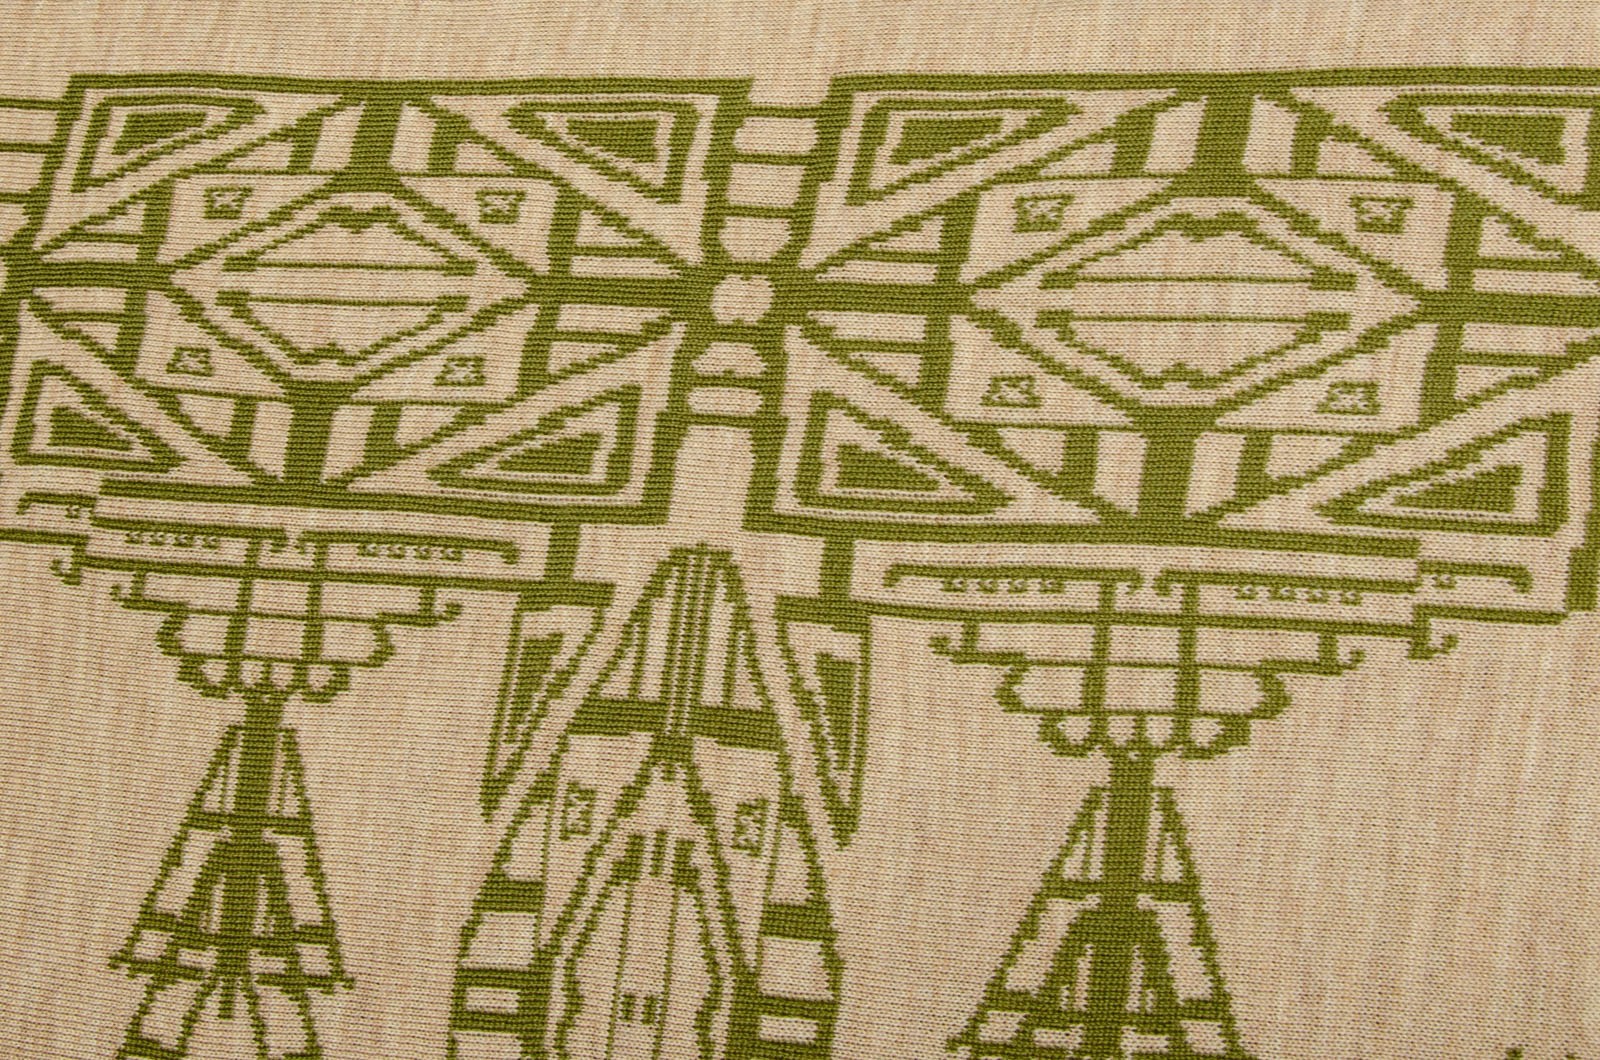 Stole, triangular Aztek shawl in green and beige 2